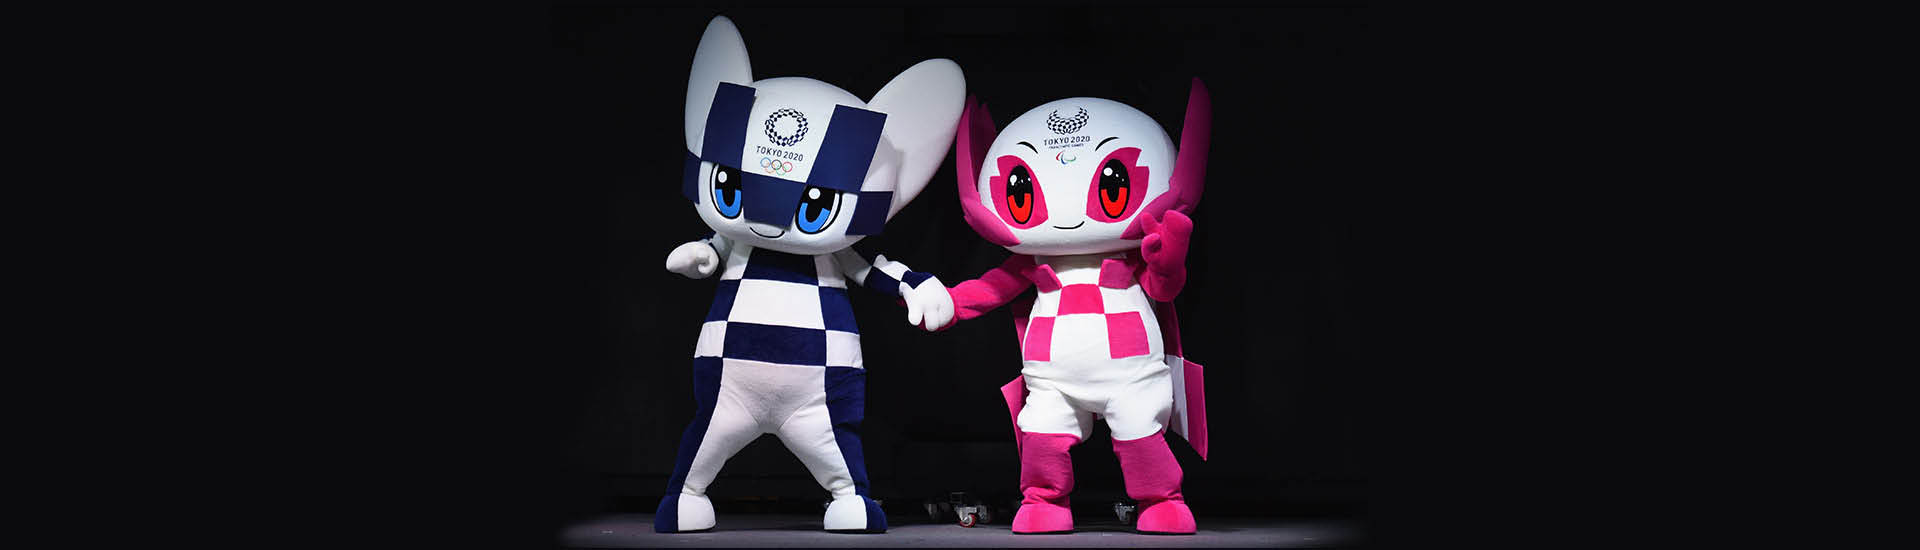 Mascotes dos Jogos Olímpicos e Paralímpicos de Tokyo 2020. À esquerda, Miraitowa: personagem com roupa branca com quadriculados azuis, olhos grandes e azuis, com orelhas para cima. À direita, Someity: personagem com roupa branca e quadriculados rosas, olhos vermelhos e capa rosa. O fundo da imagem é preto.